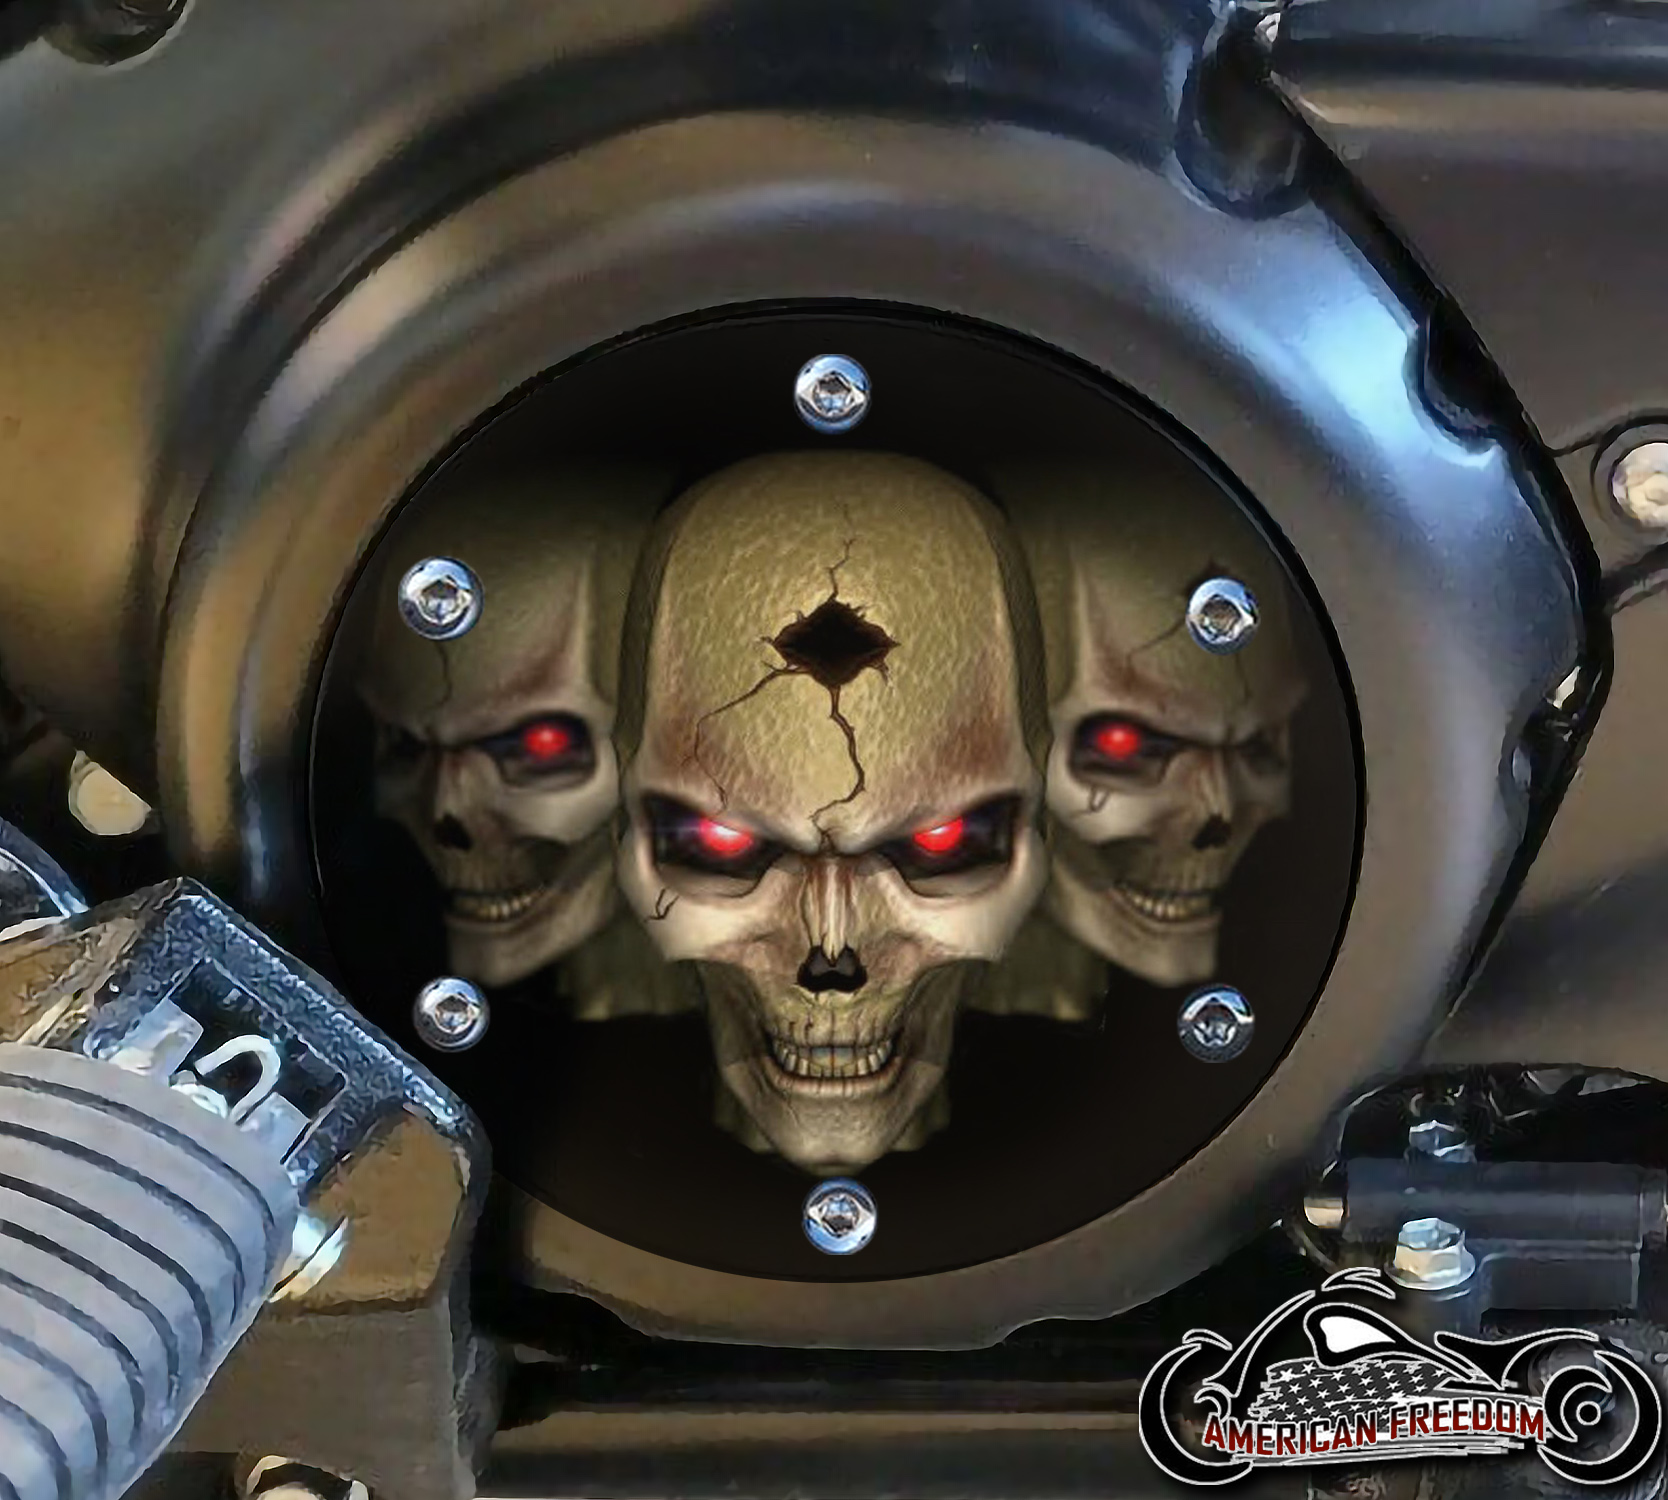 SUZUKI M109R Derby/Engine Cover - 3 Skulls